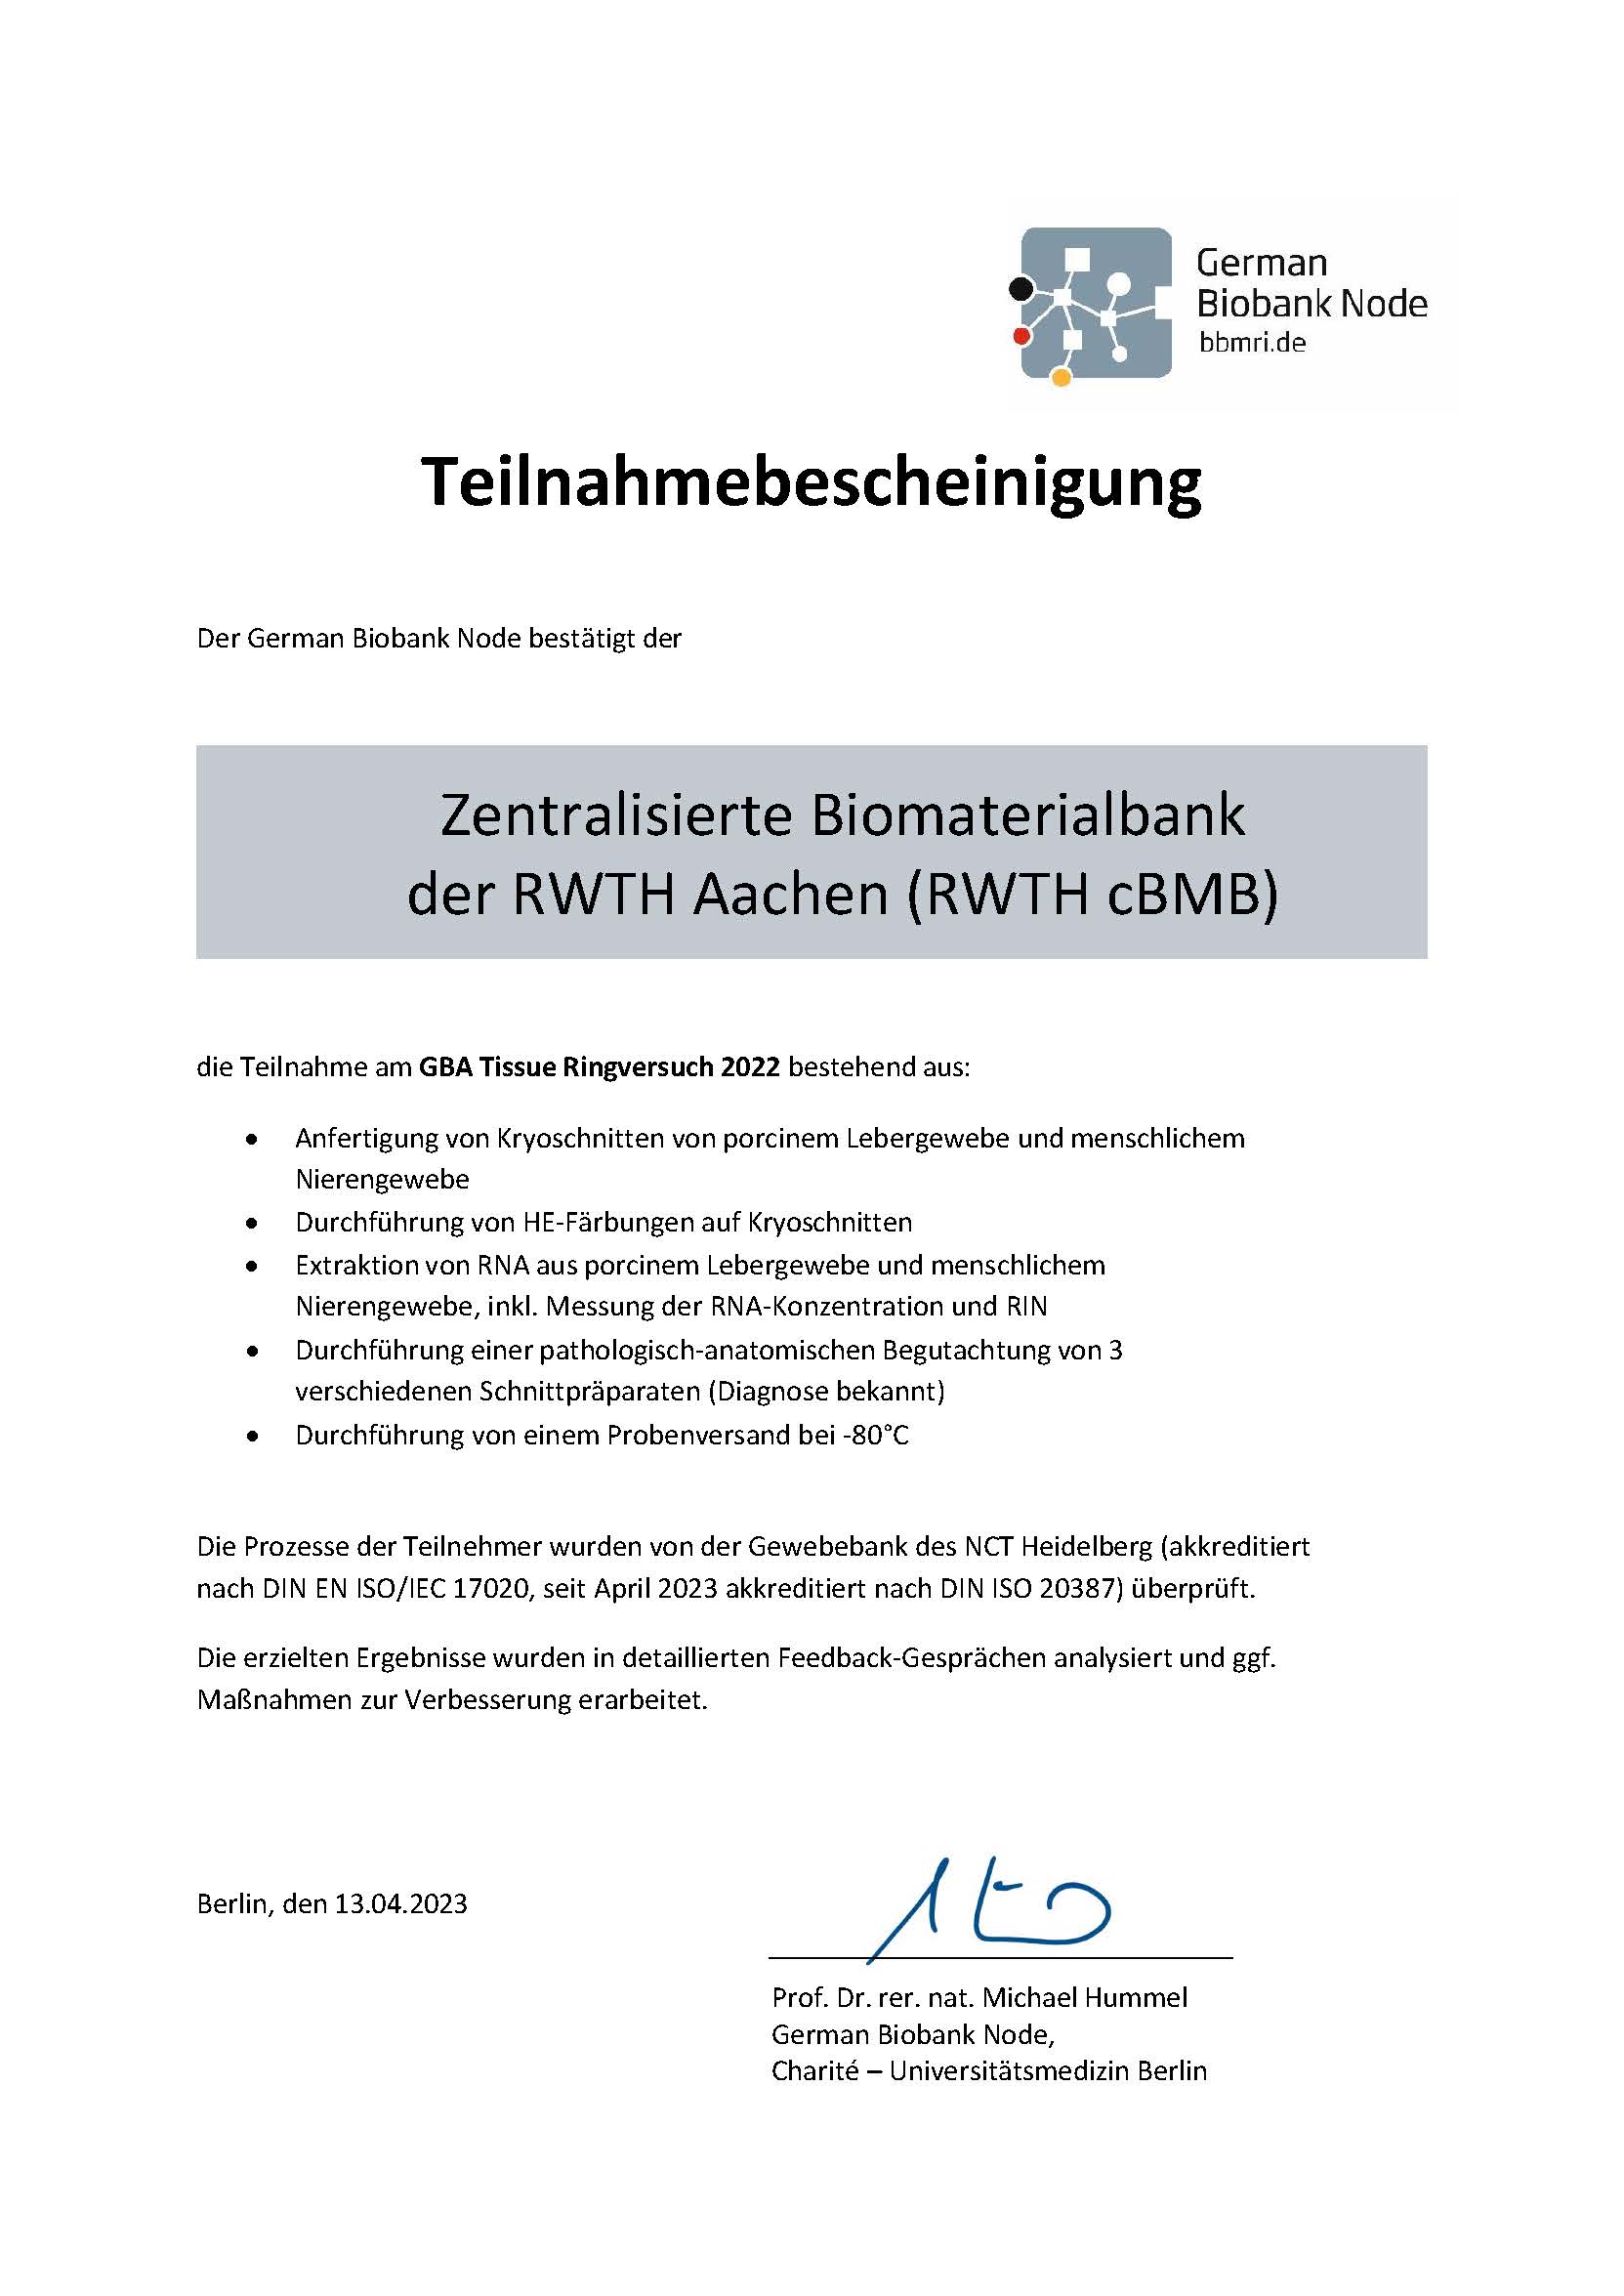 Teilnahmebescheinigung_GBA-RV-Tissue2022_RWTHcBMBAachen